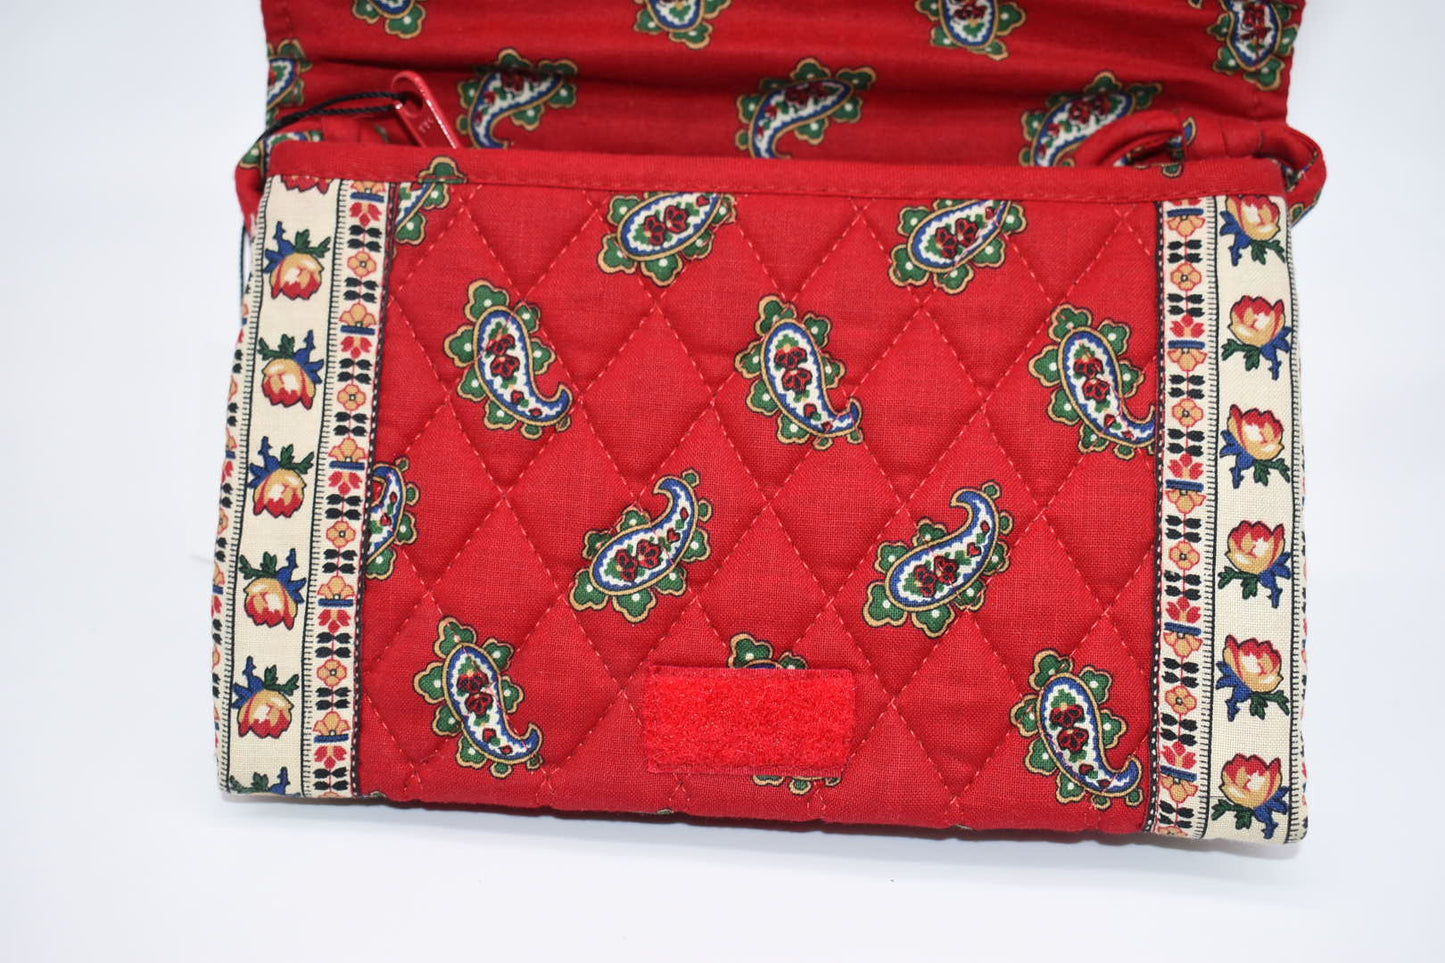 Vintage Vera Bradley Elite Crossbody Bag in "Red -1991" Pattern